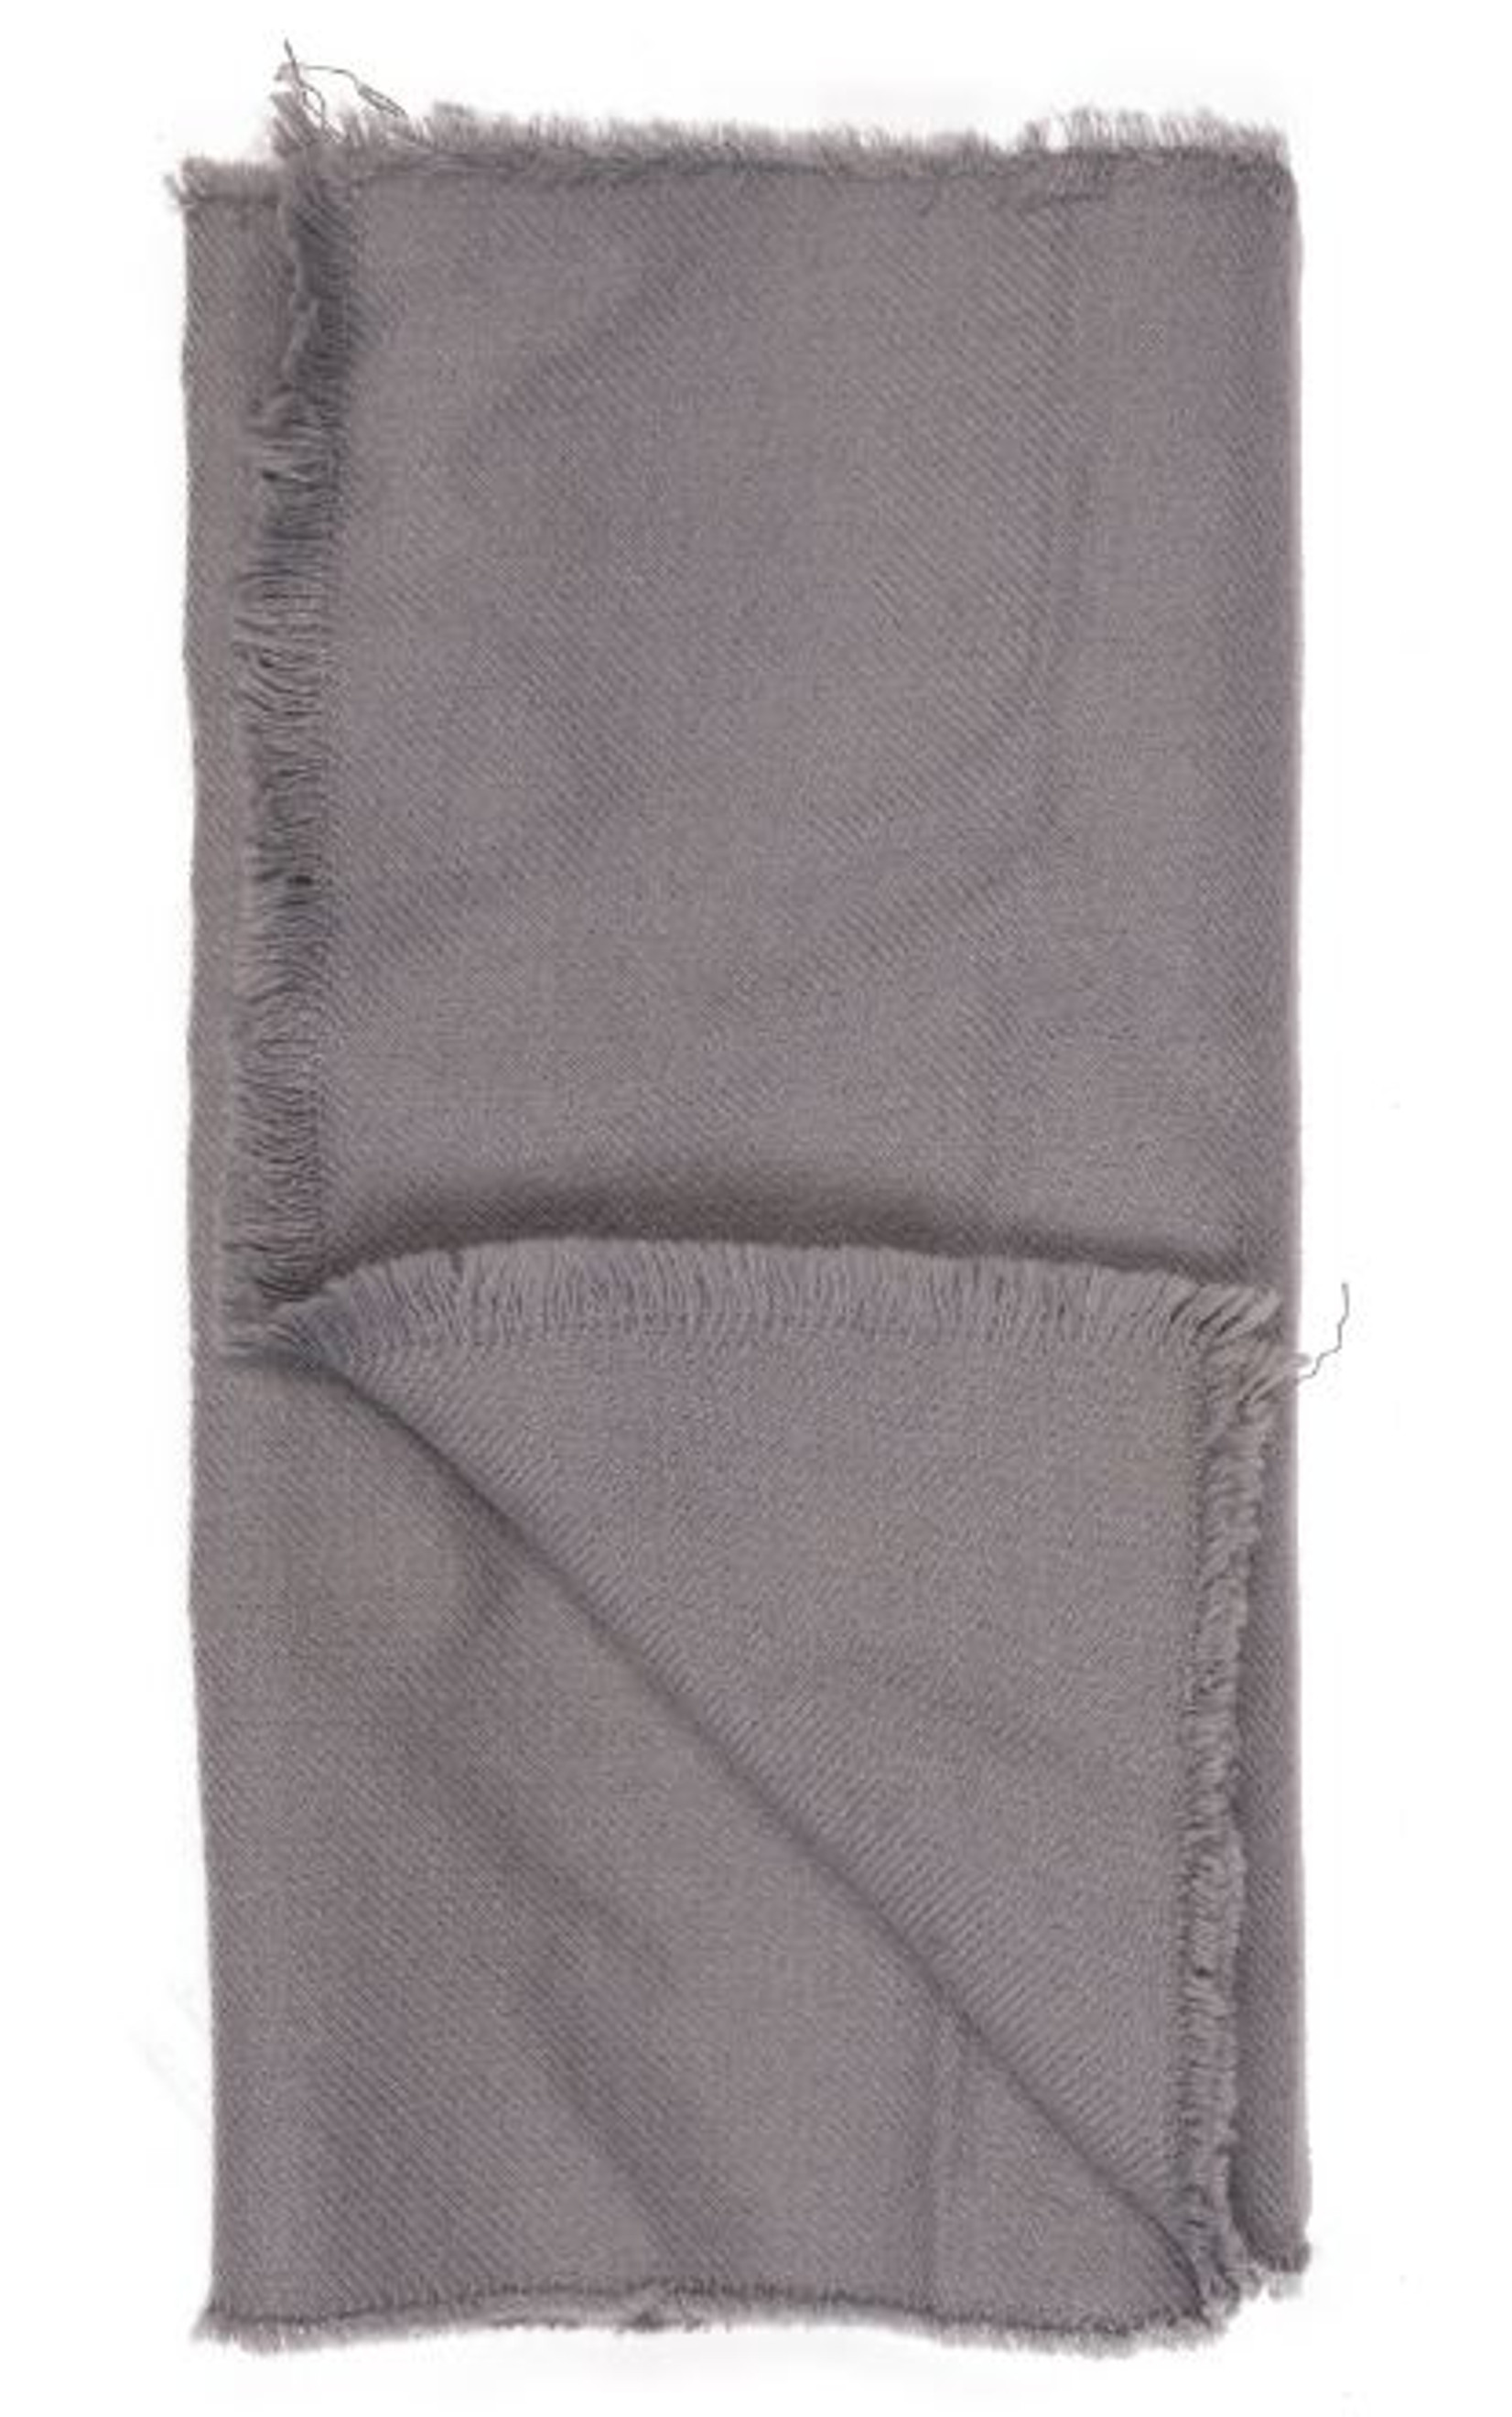 East German Armed Forces Grey Wool Scarf